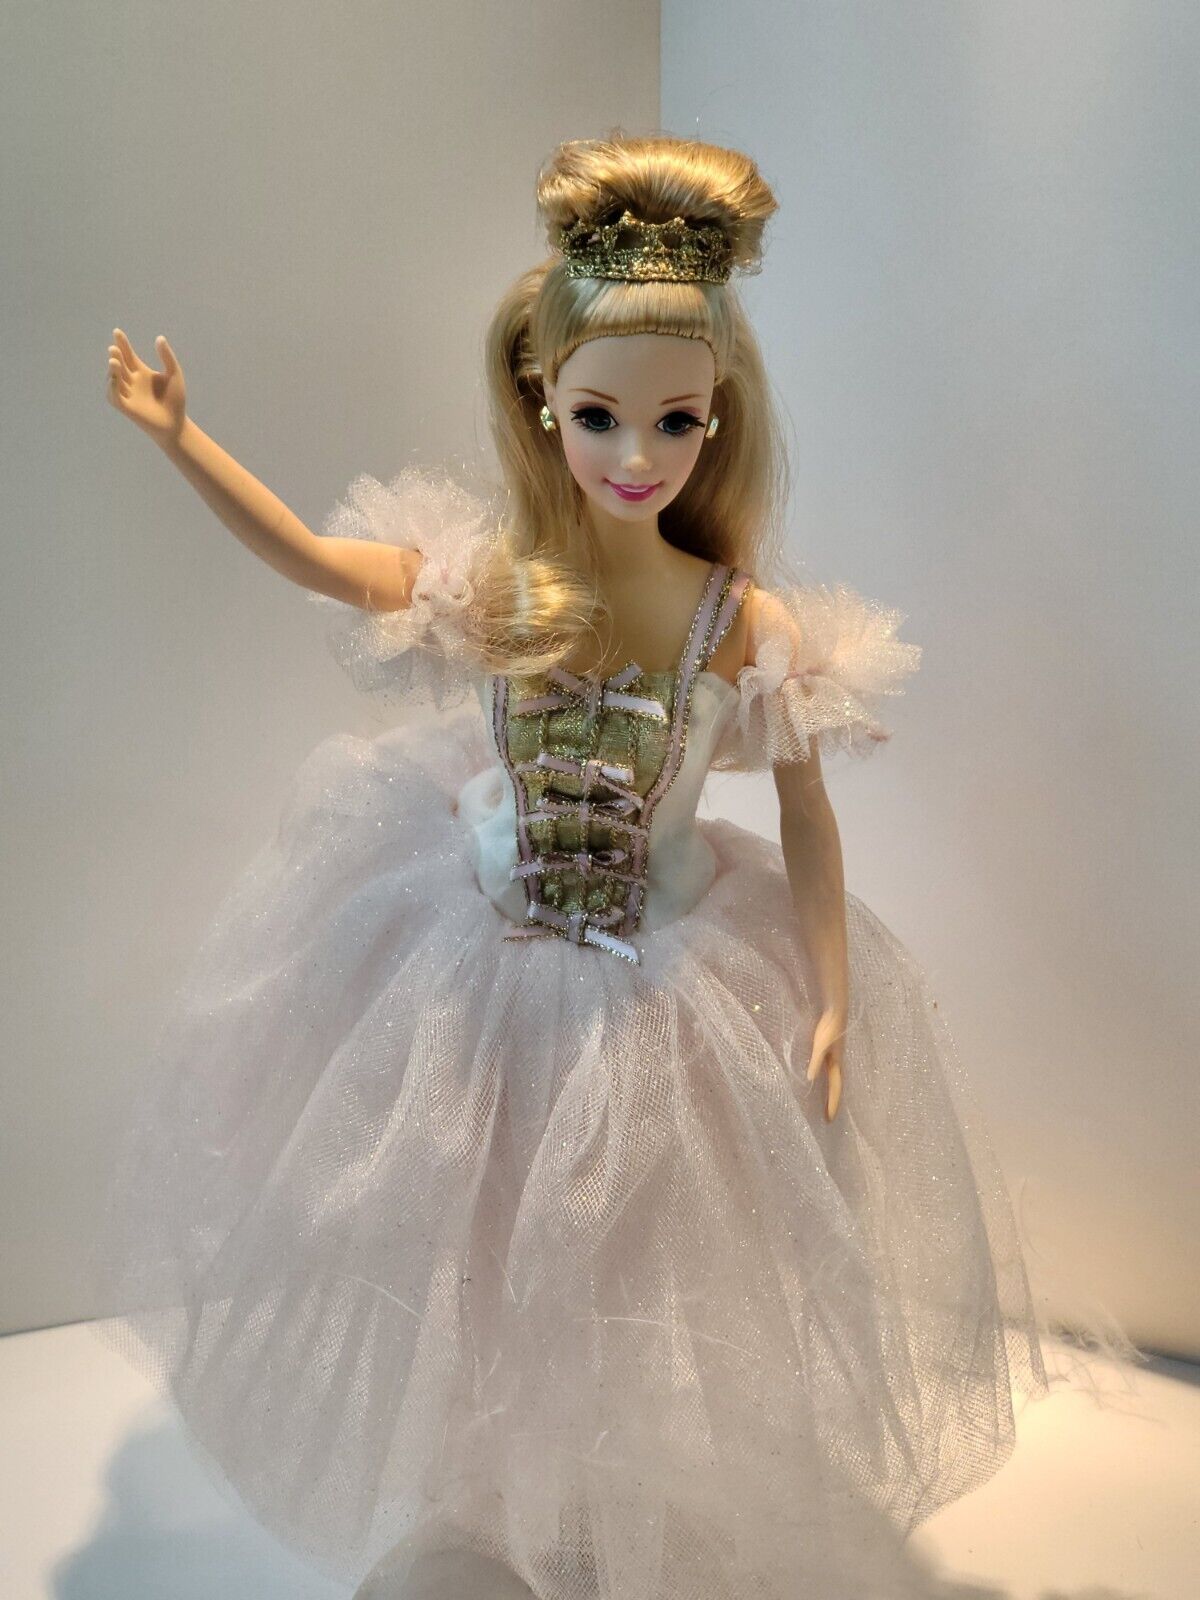 1996 Barbie as the Sugar Plum Fairy in the Nutcracker Doll #17056